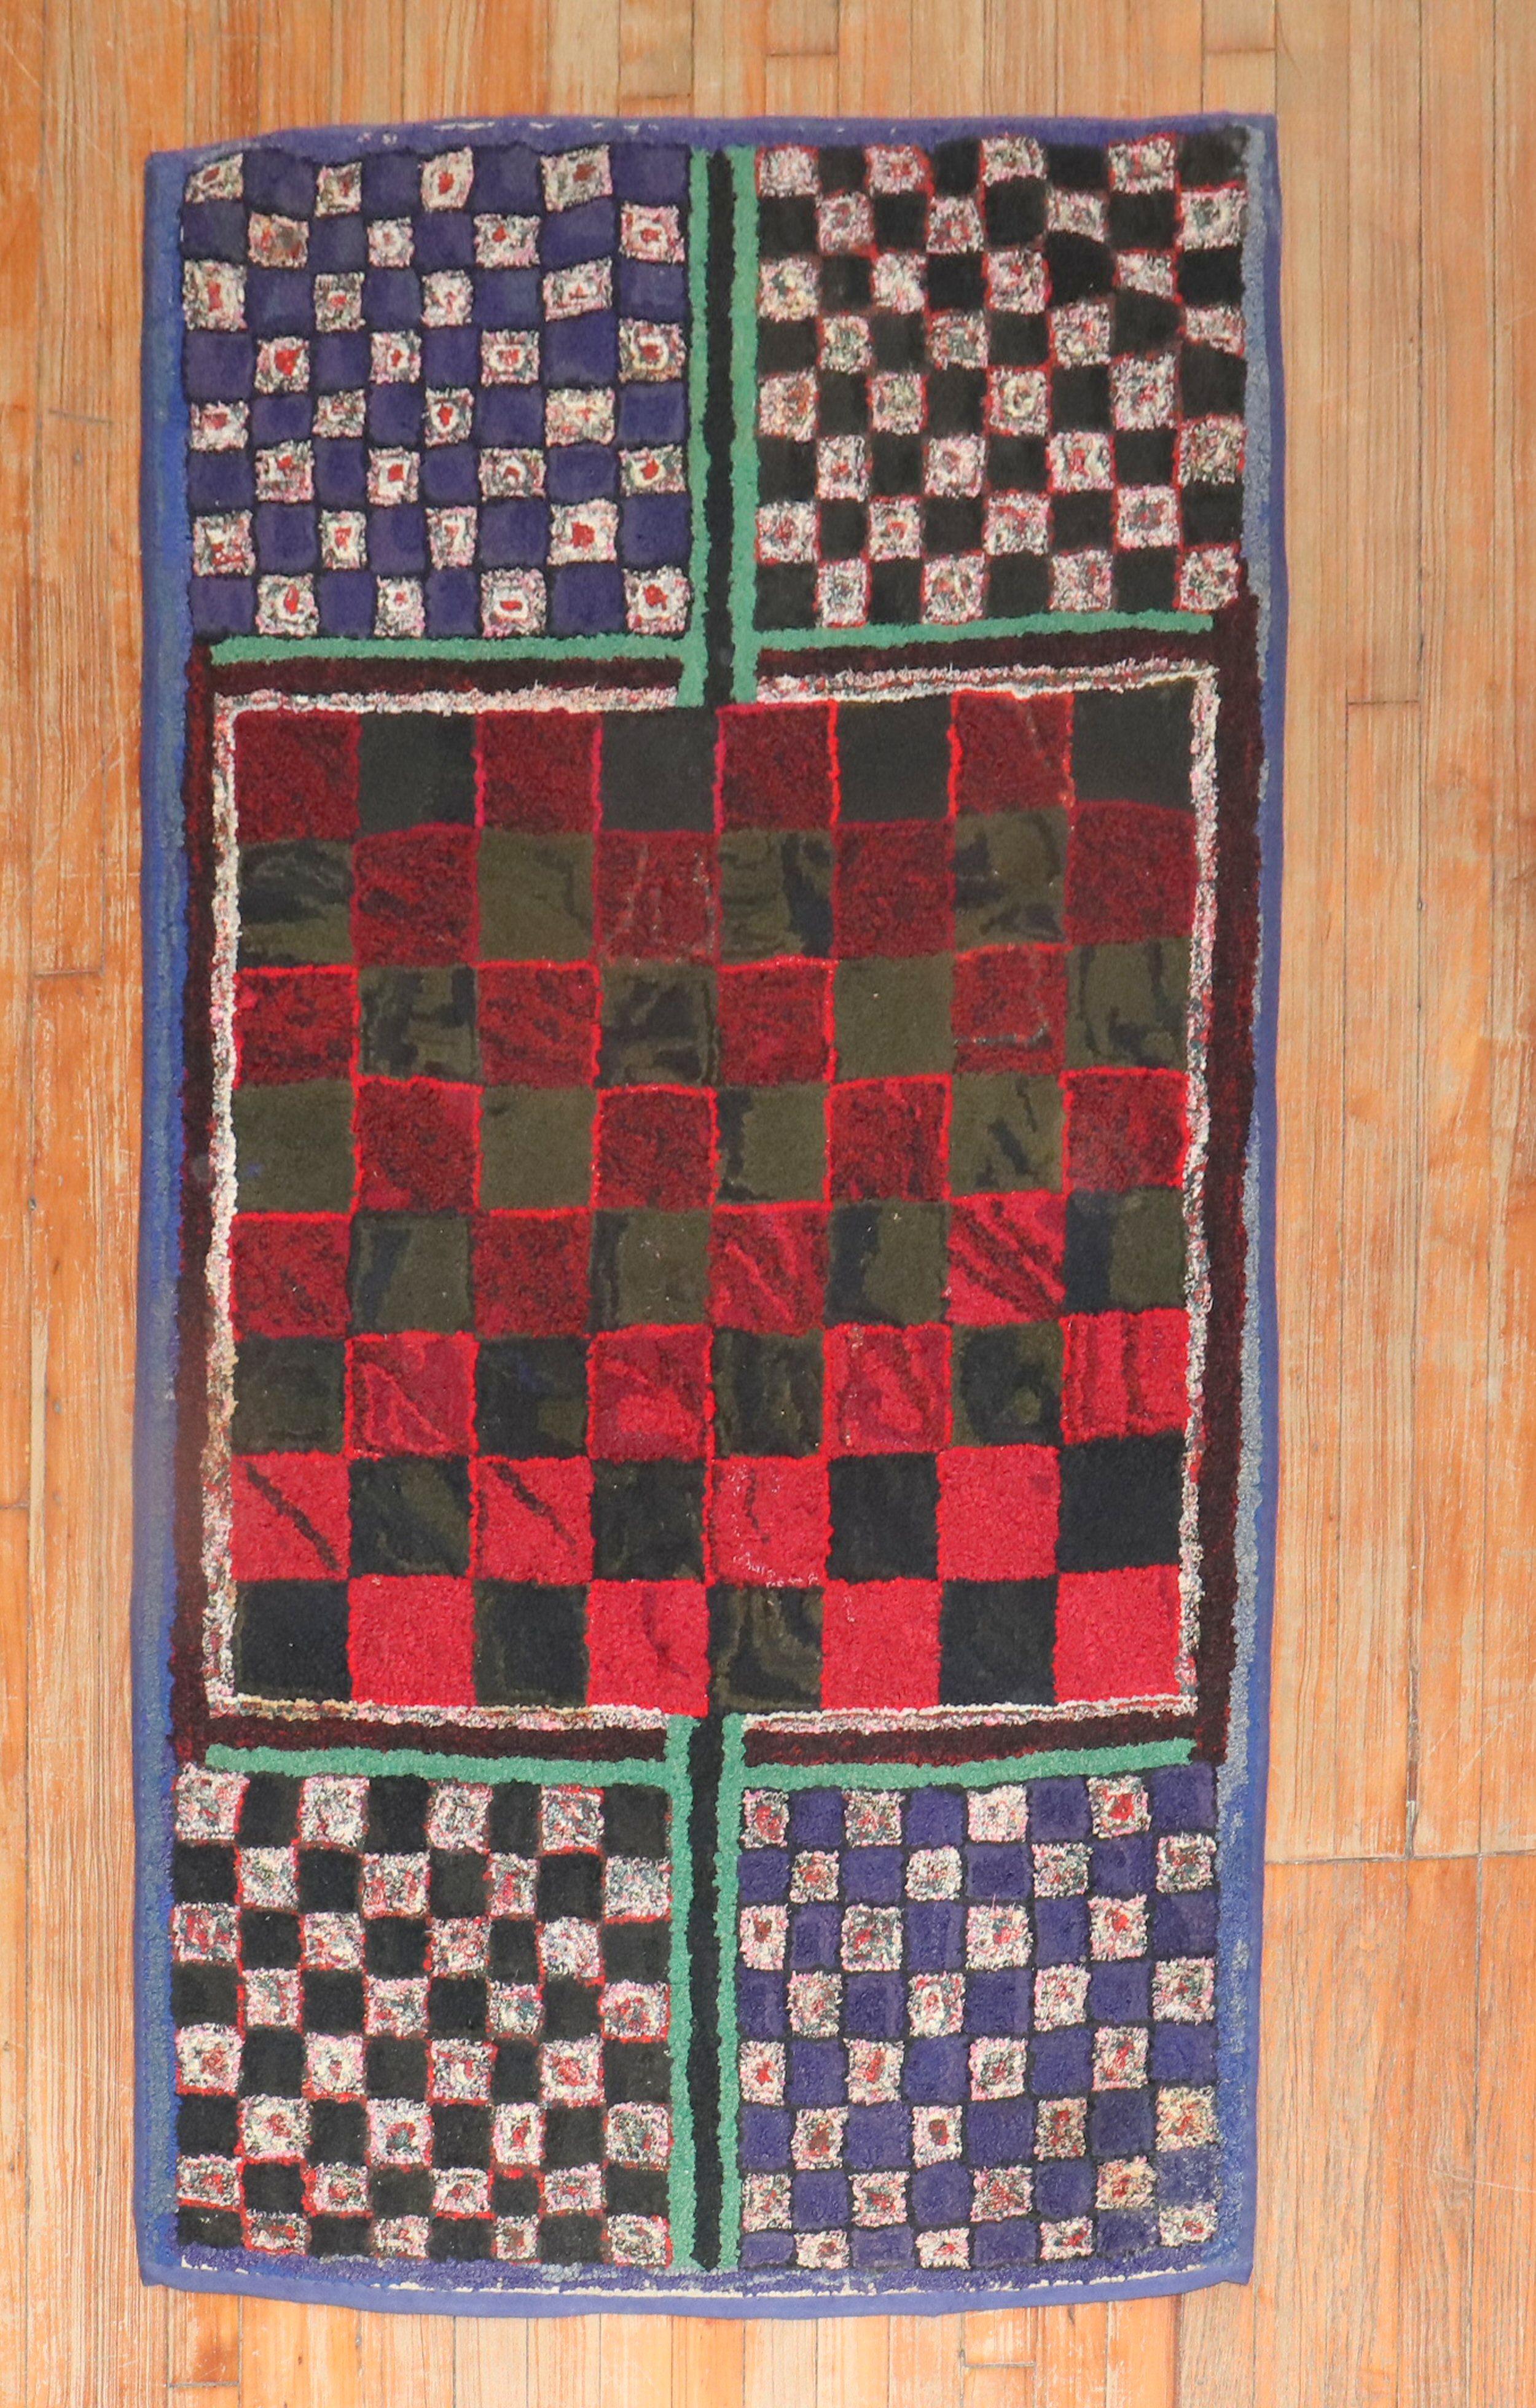 Tapis crocheté américain unique en son genre, fabriqué à la main, datant du troisième quart du 20e siècle et présentant un motif en damier irrégulier

Mesures : 3' x 5'7''.